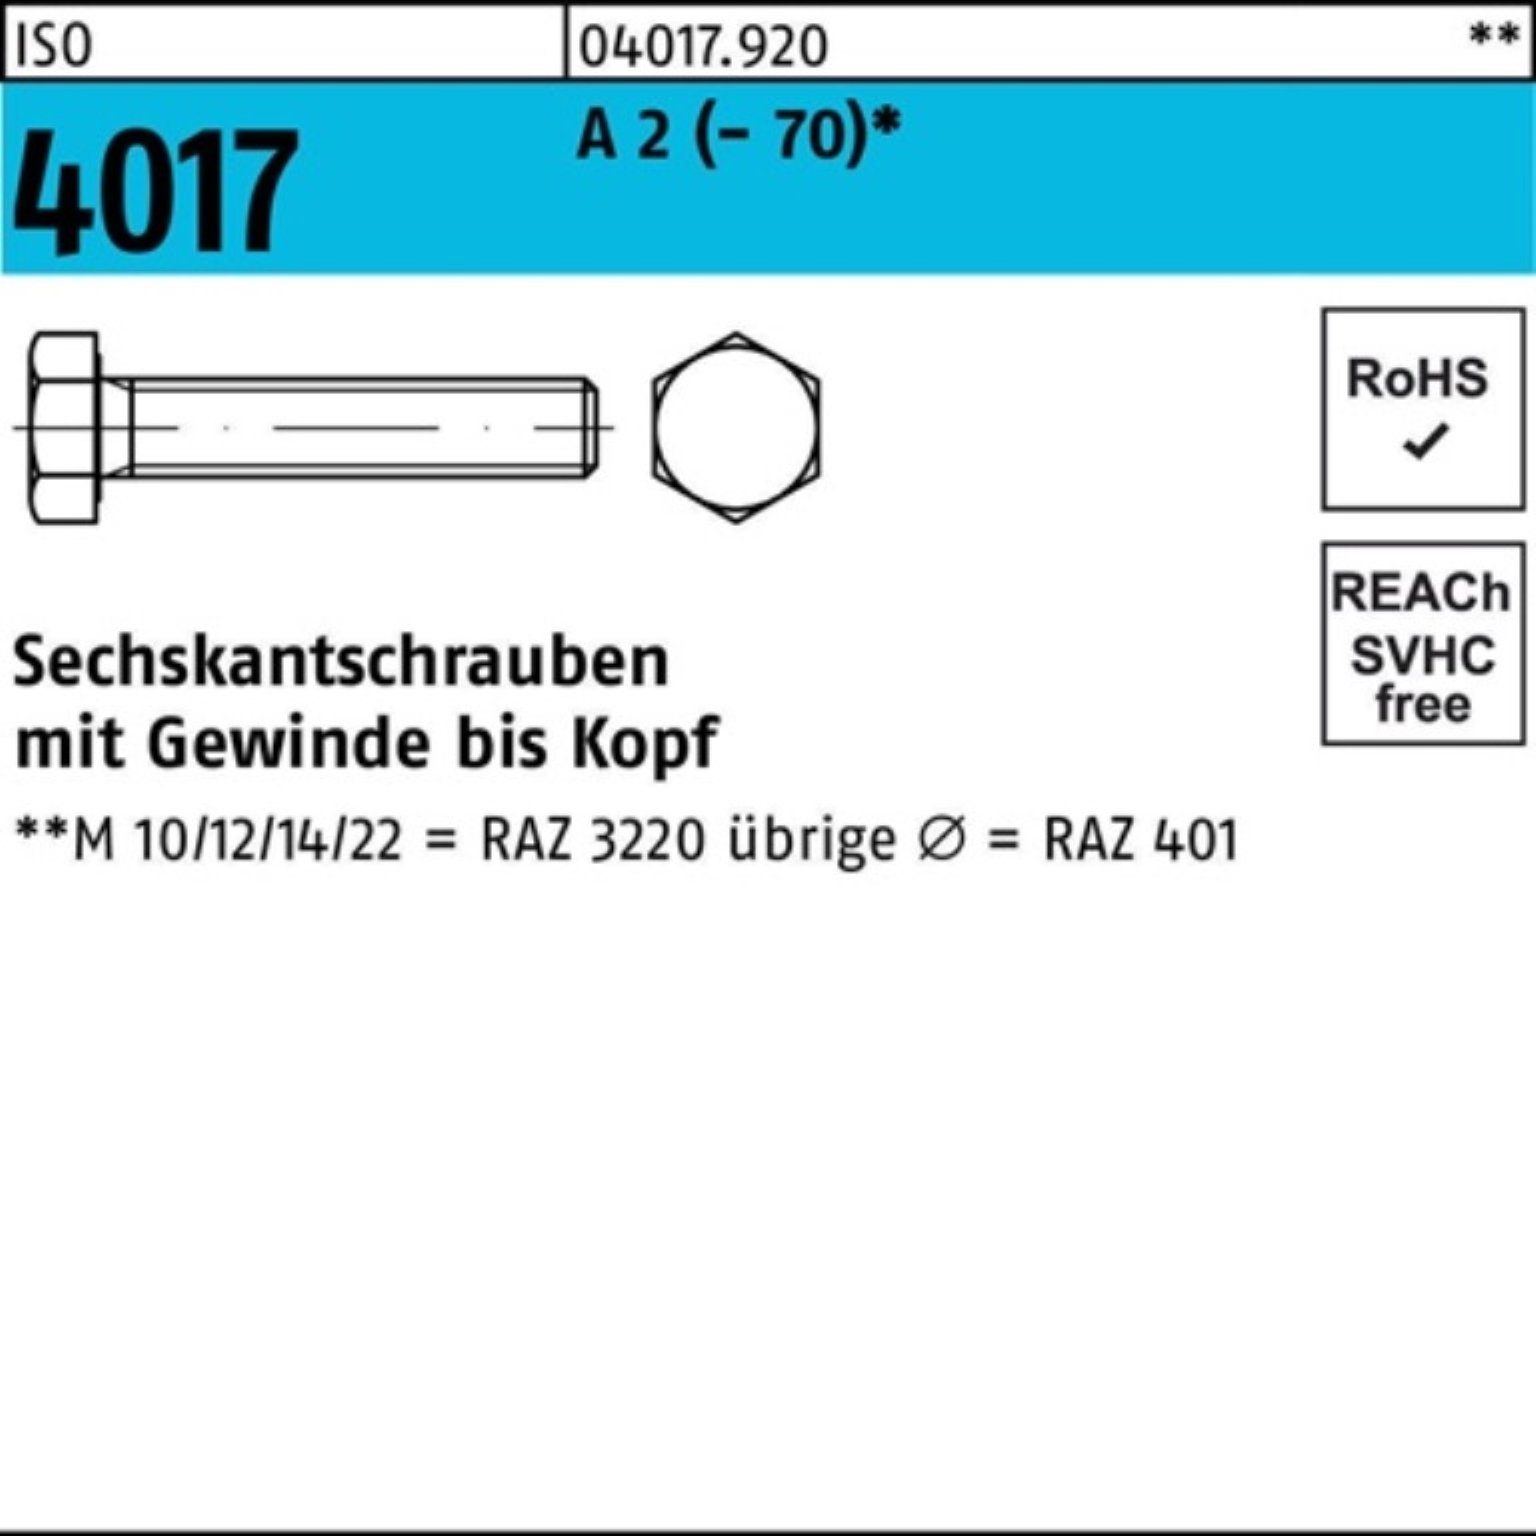 VG A Bufab Sechskantschraube M5x 100er ISO (70) Pack 4017 2 Stück Sechskantschraube 12 100